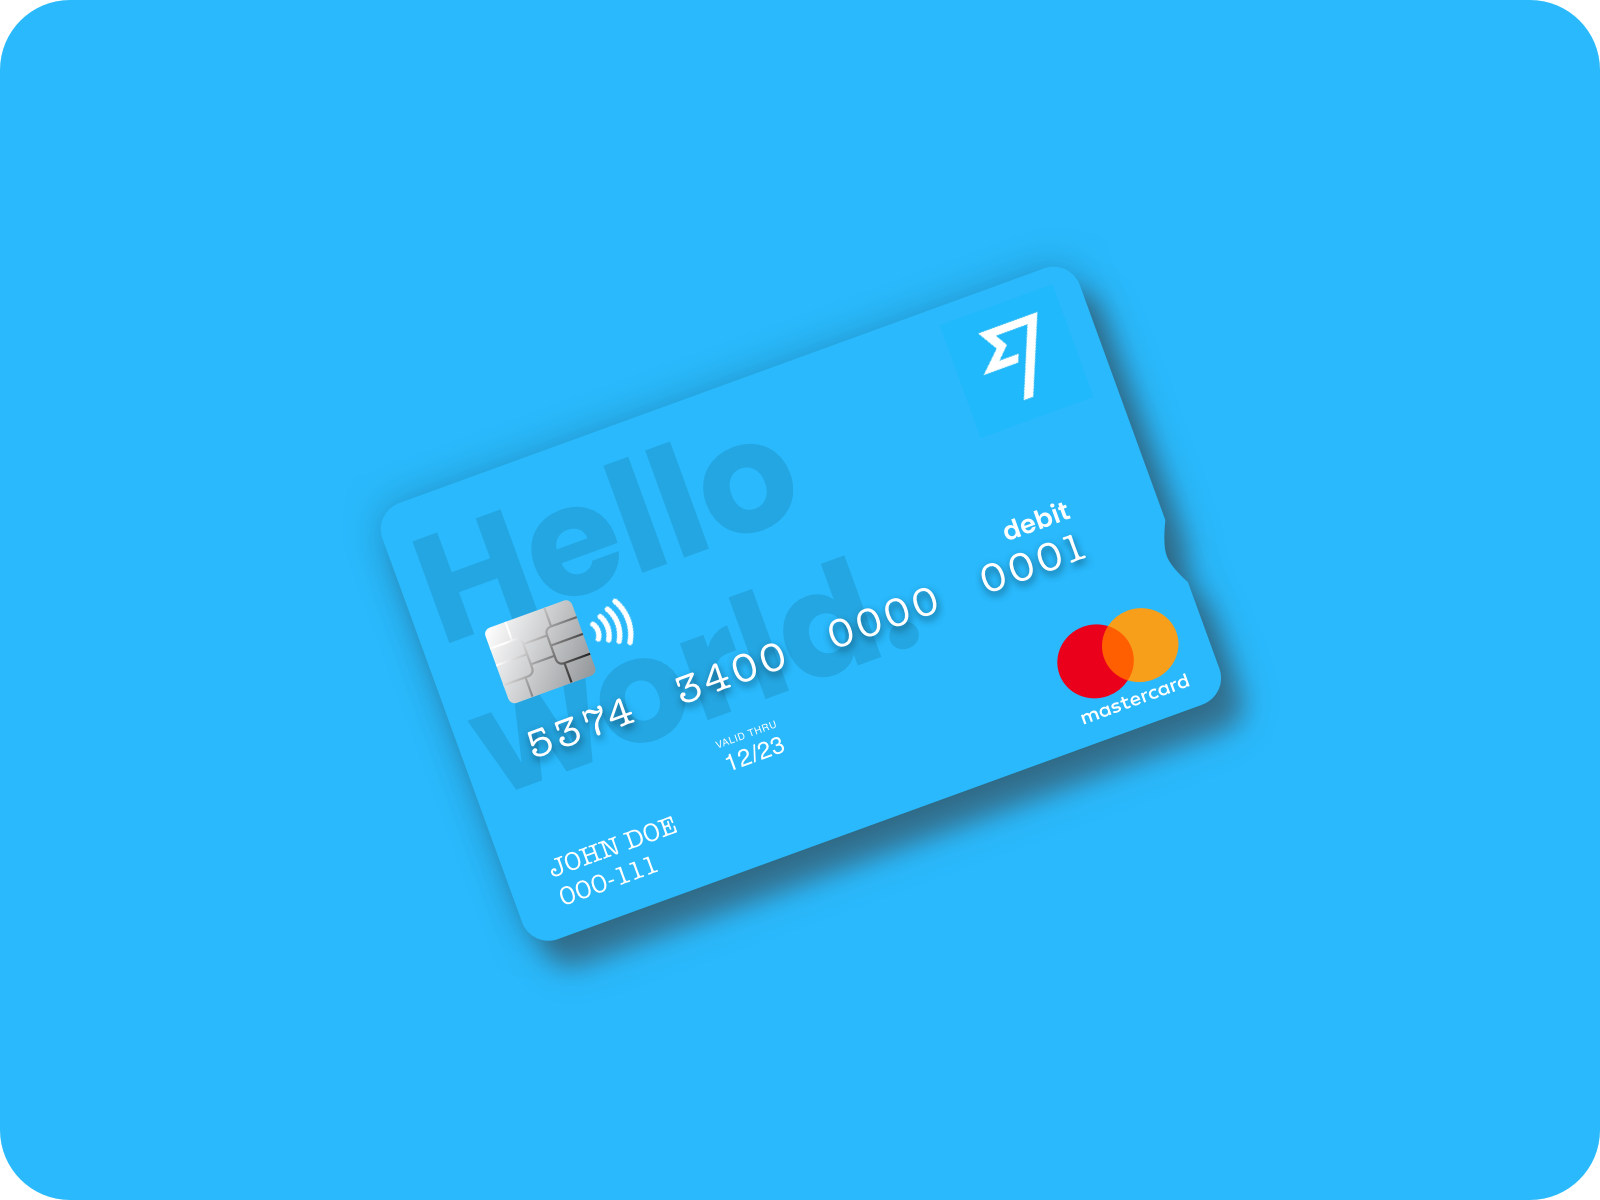 TransferWise Debit Card by Tayfun on Dribbble